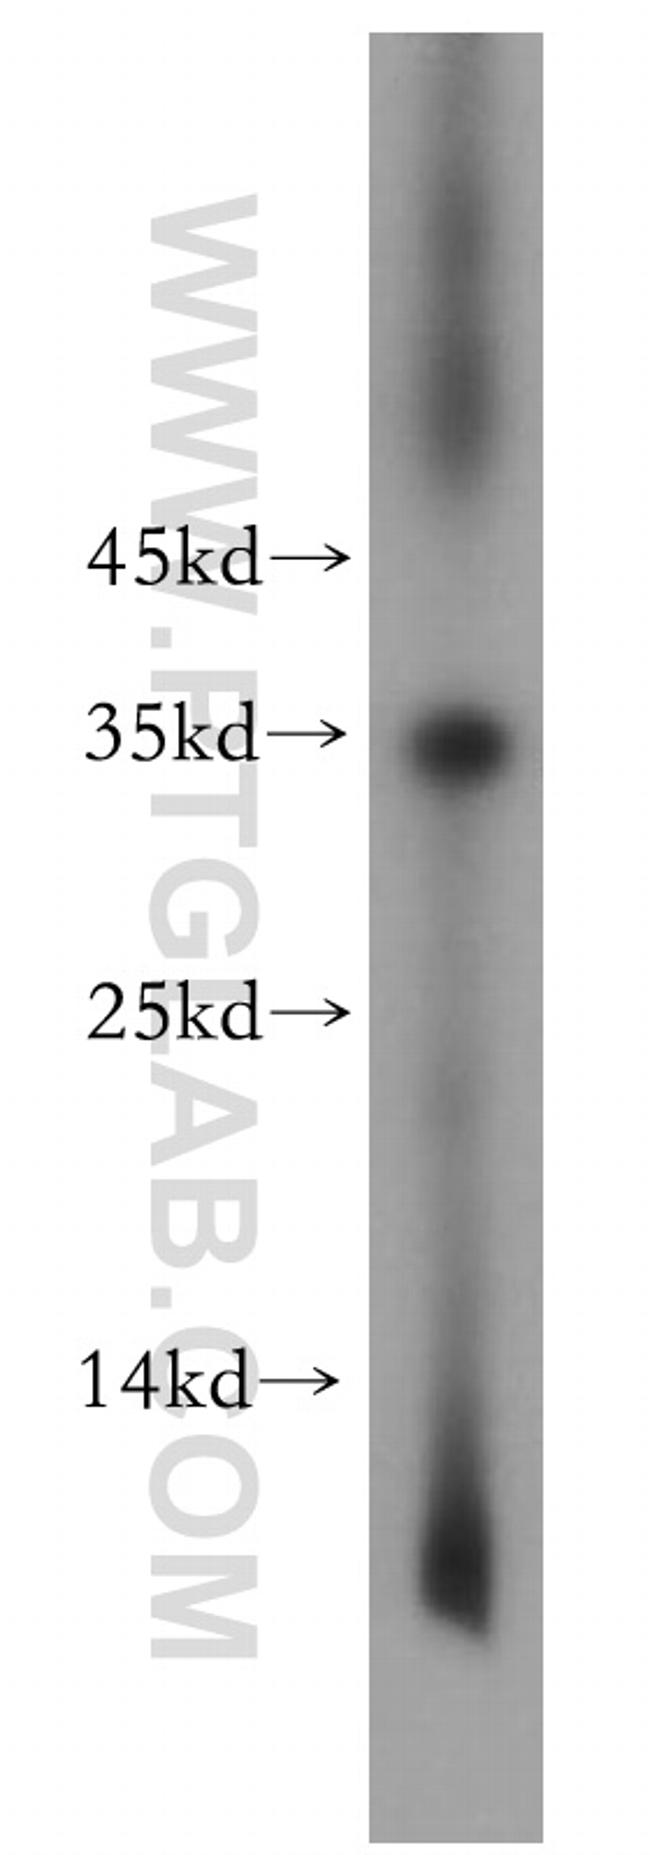 TNNT1 Antibody in Western Blot (WB)